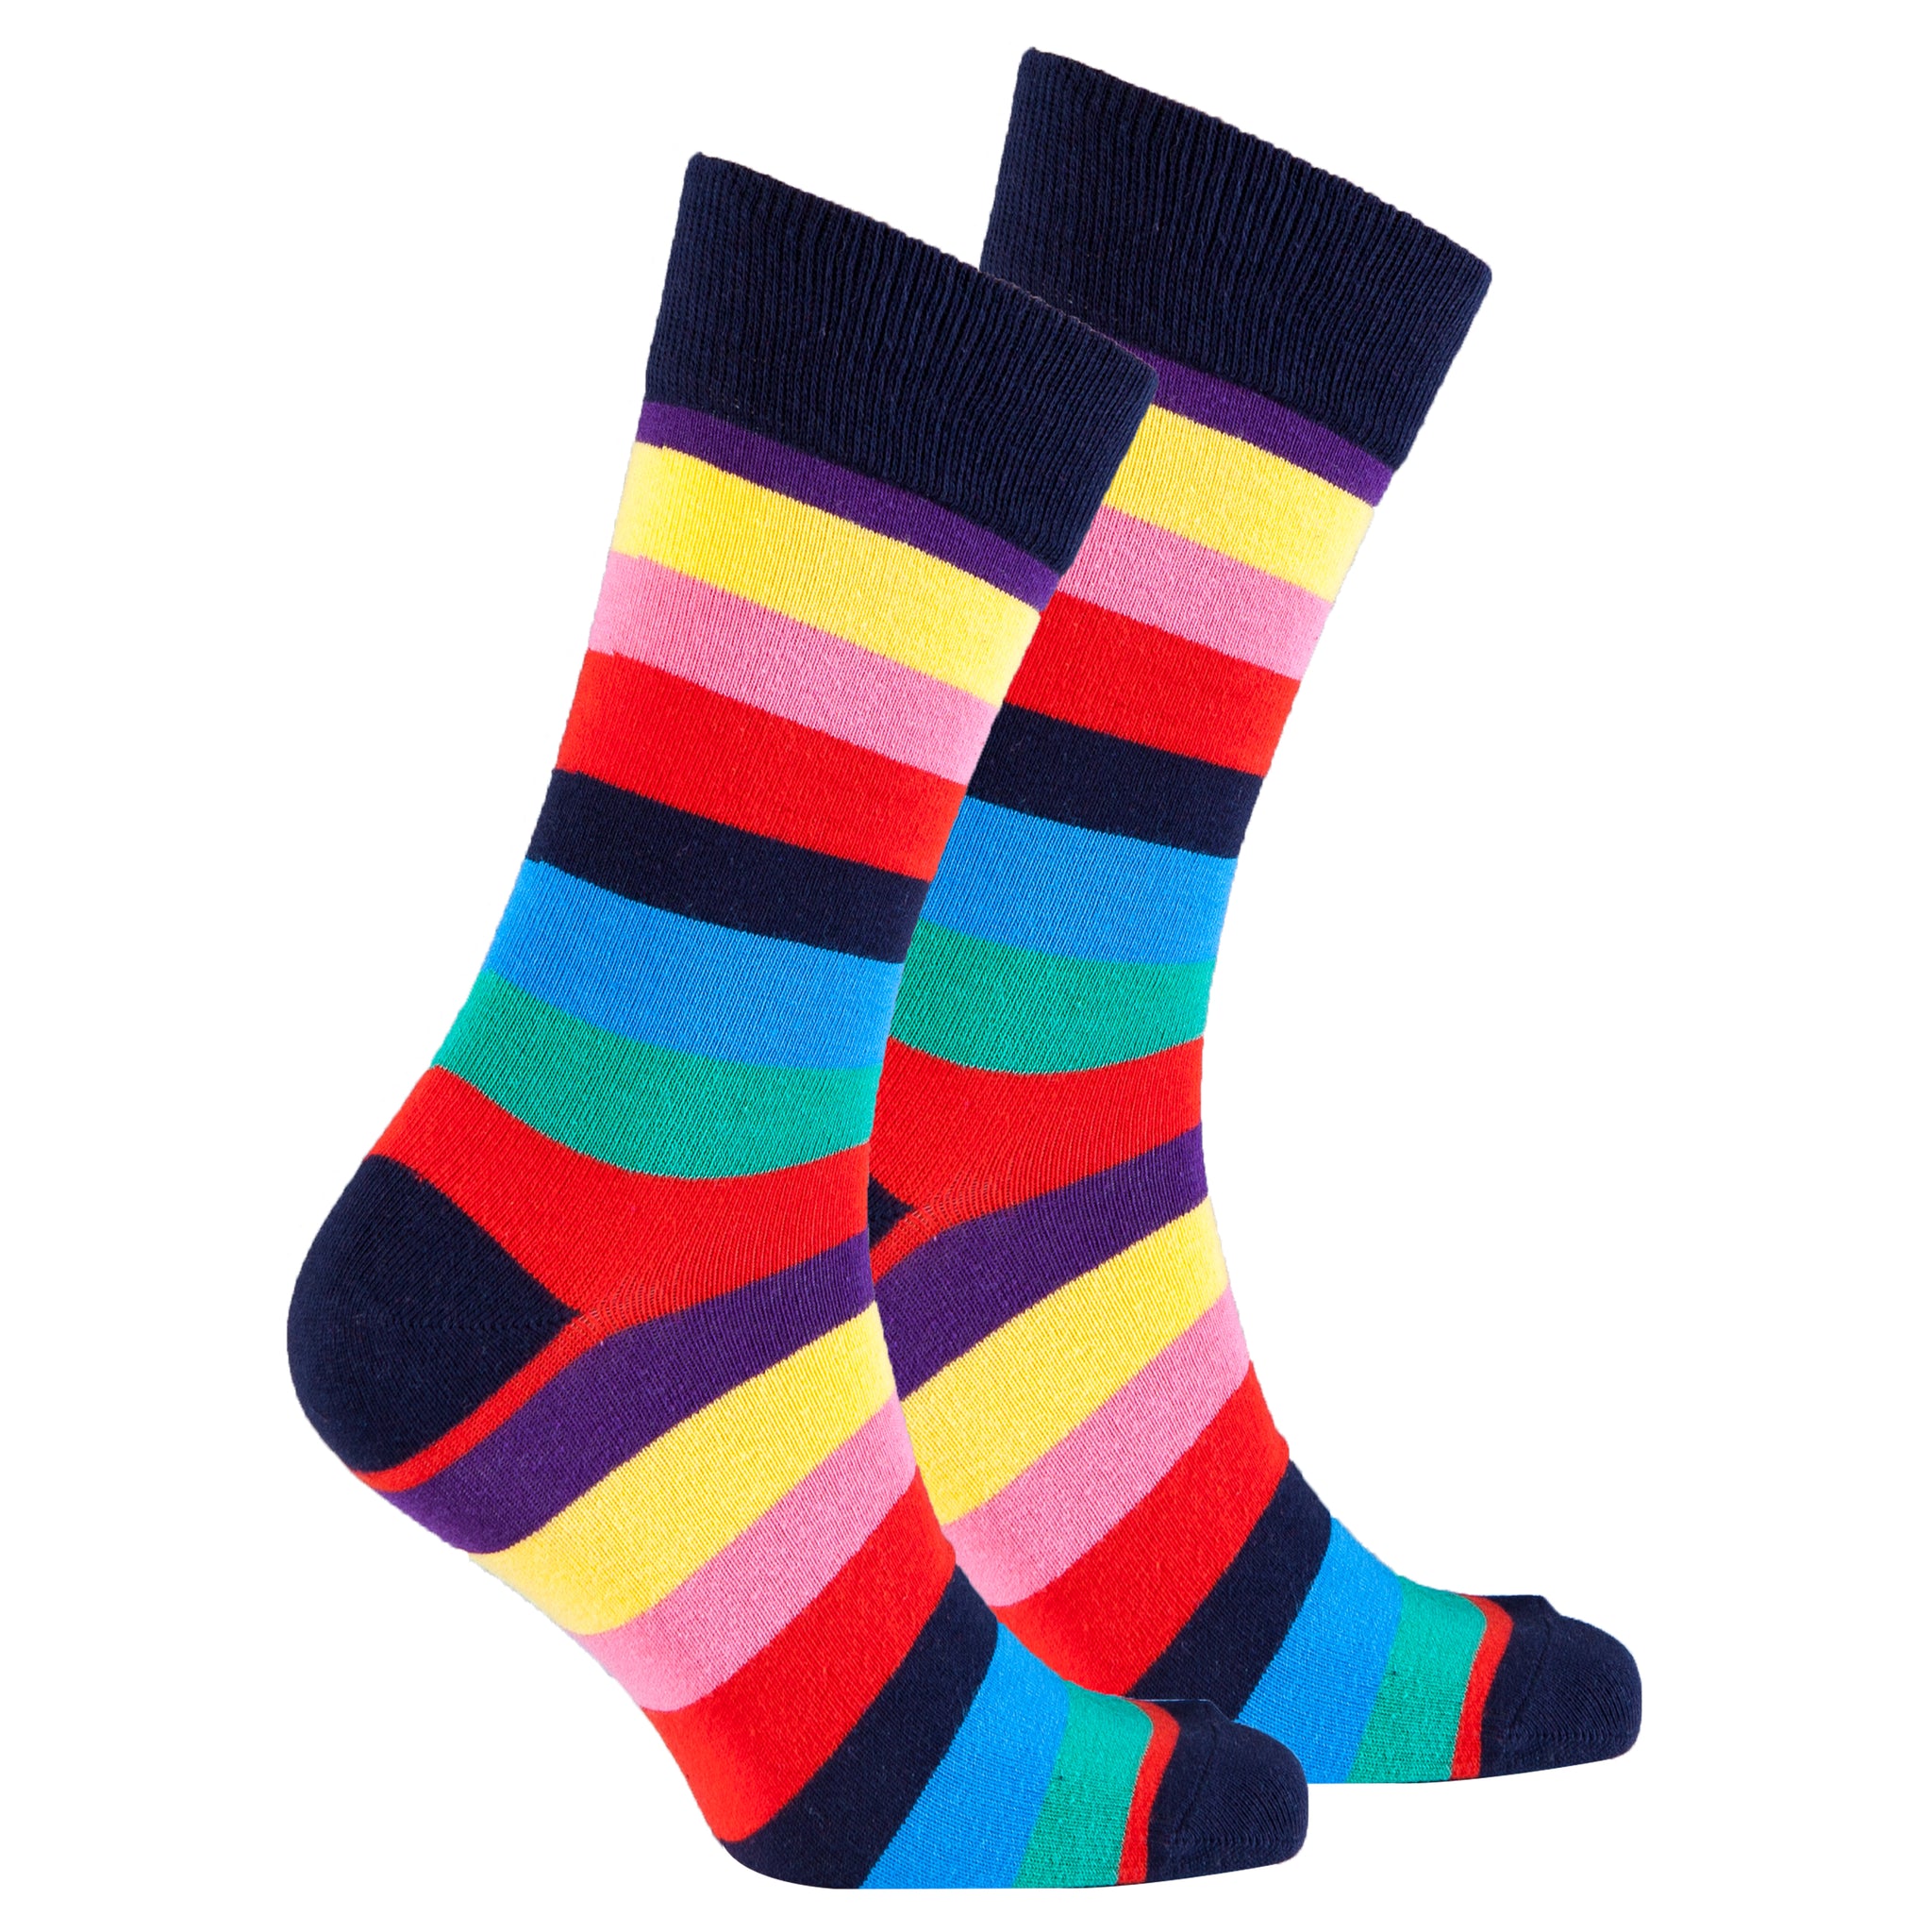 Men's Urban Stripe Socks - Socks n Socks